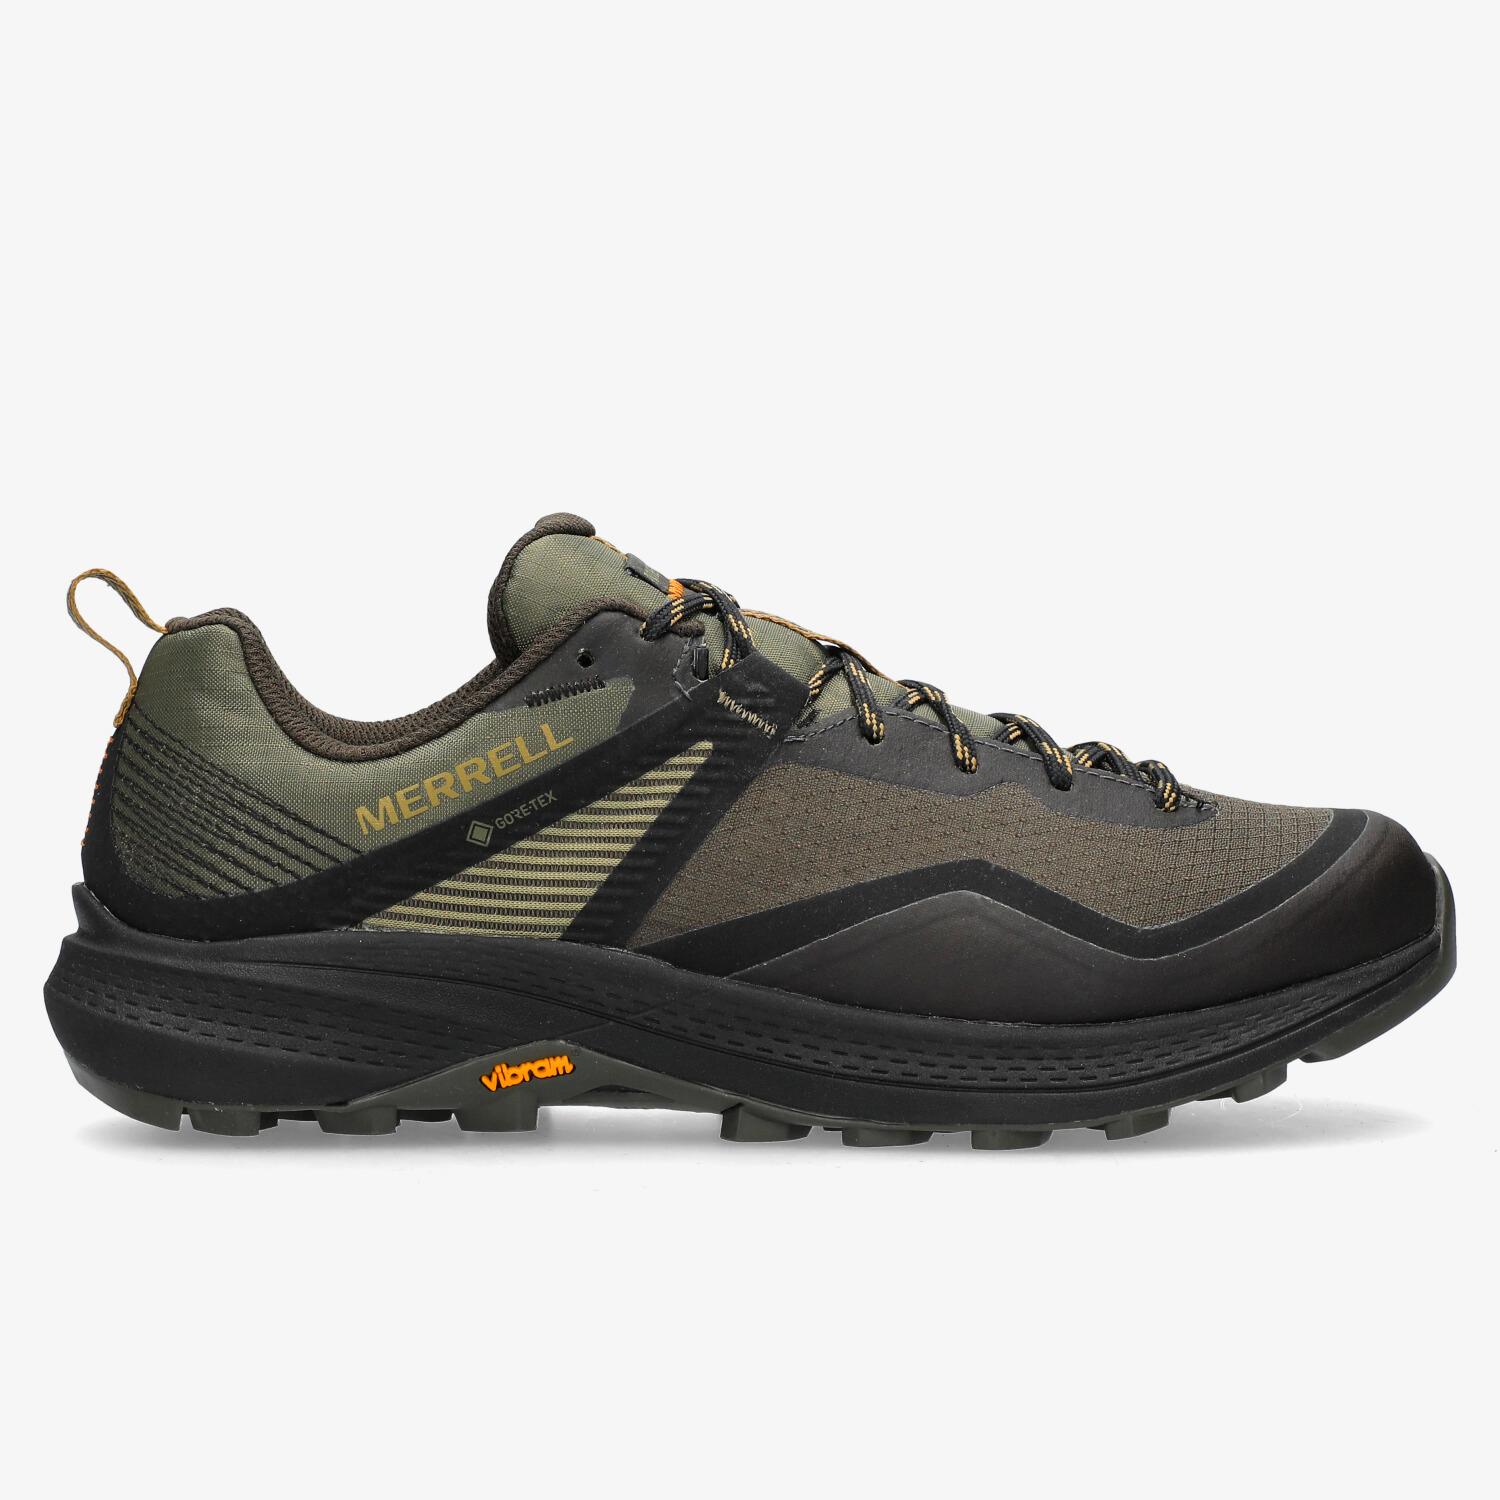 Zapatillas trekking tejido gore tex - Ofertas para comprar online